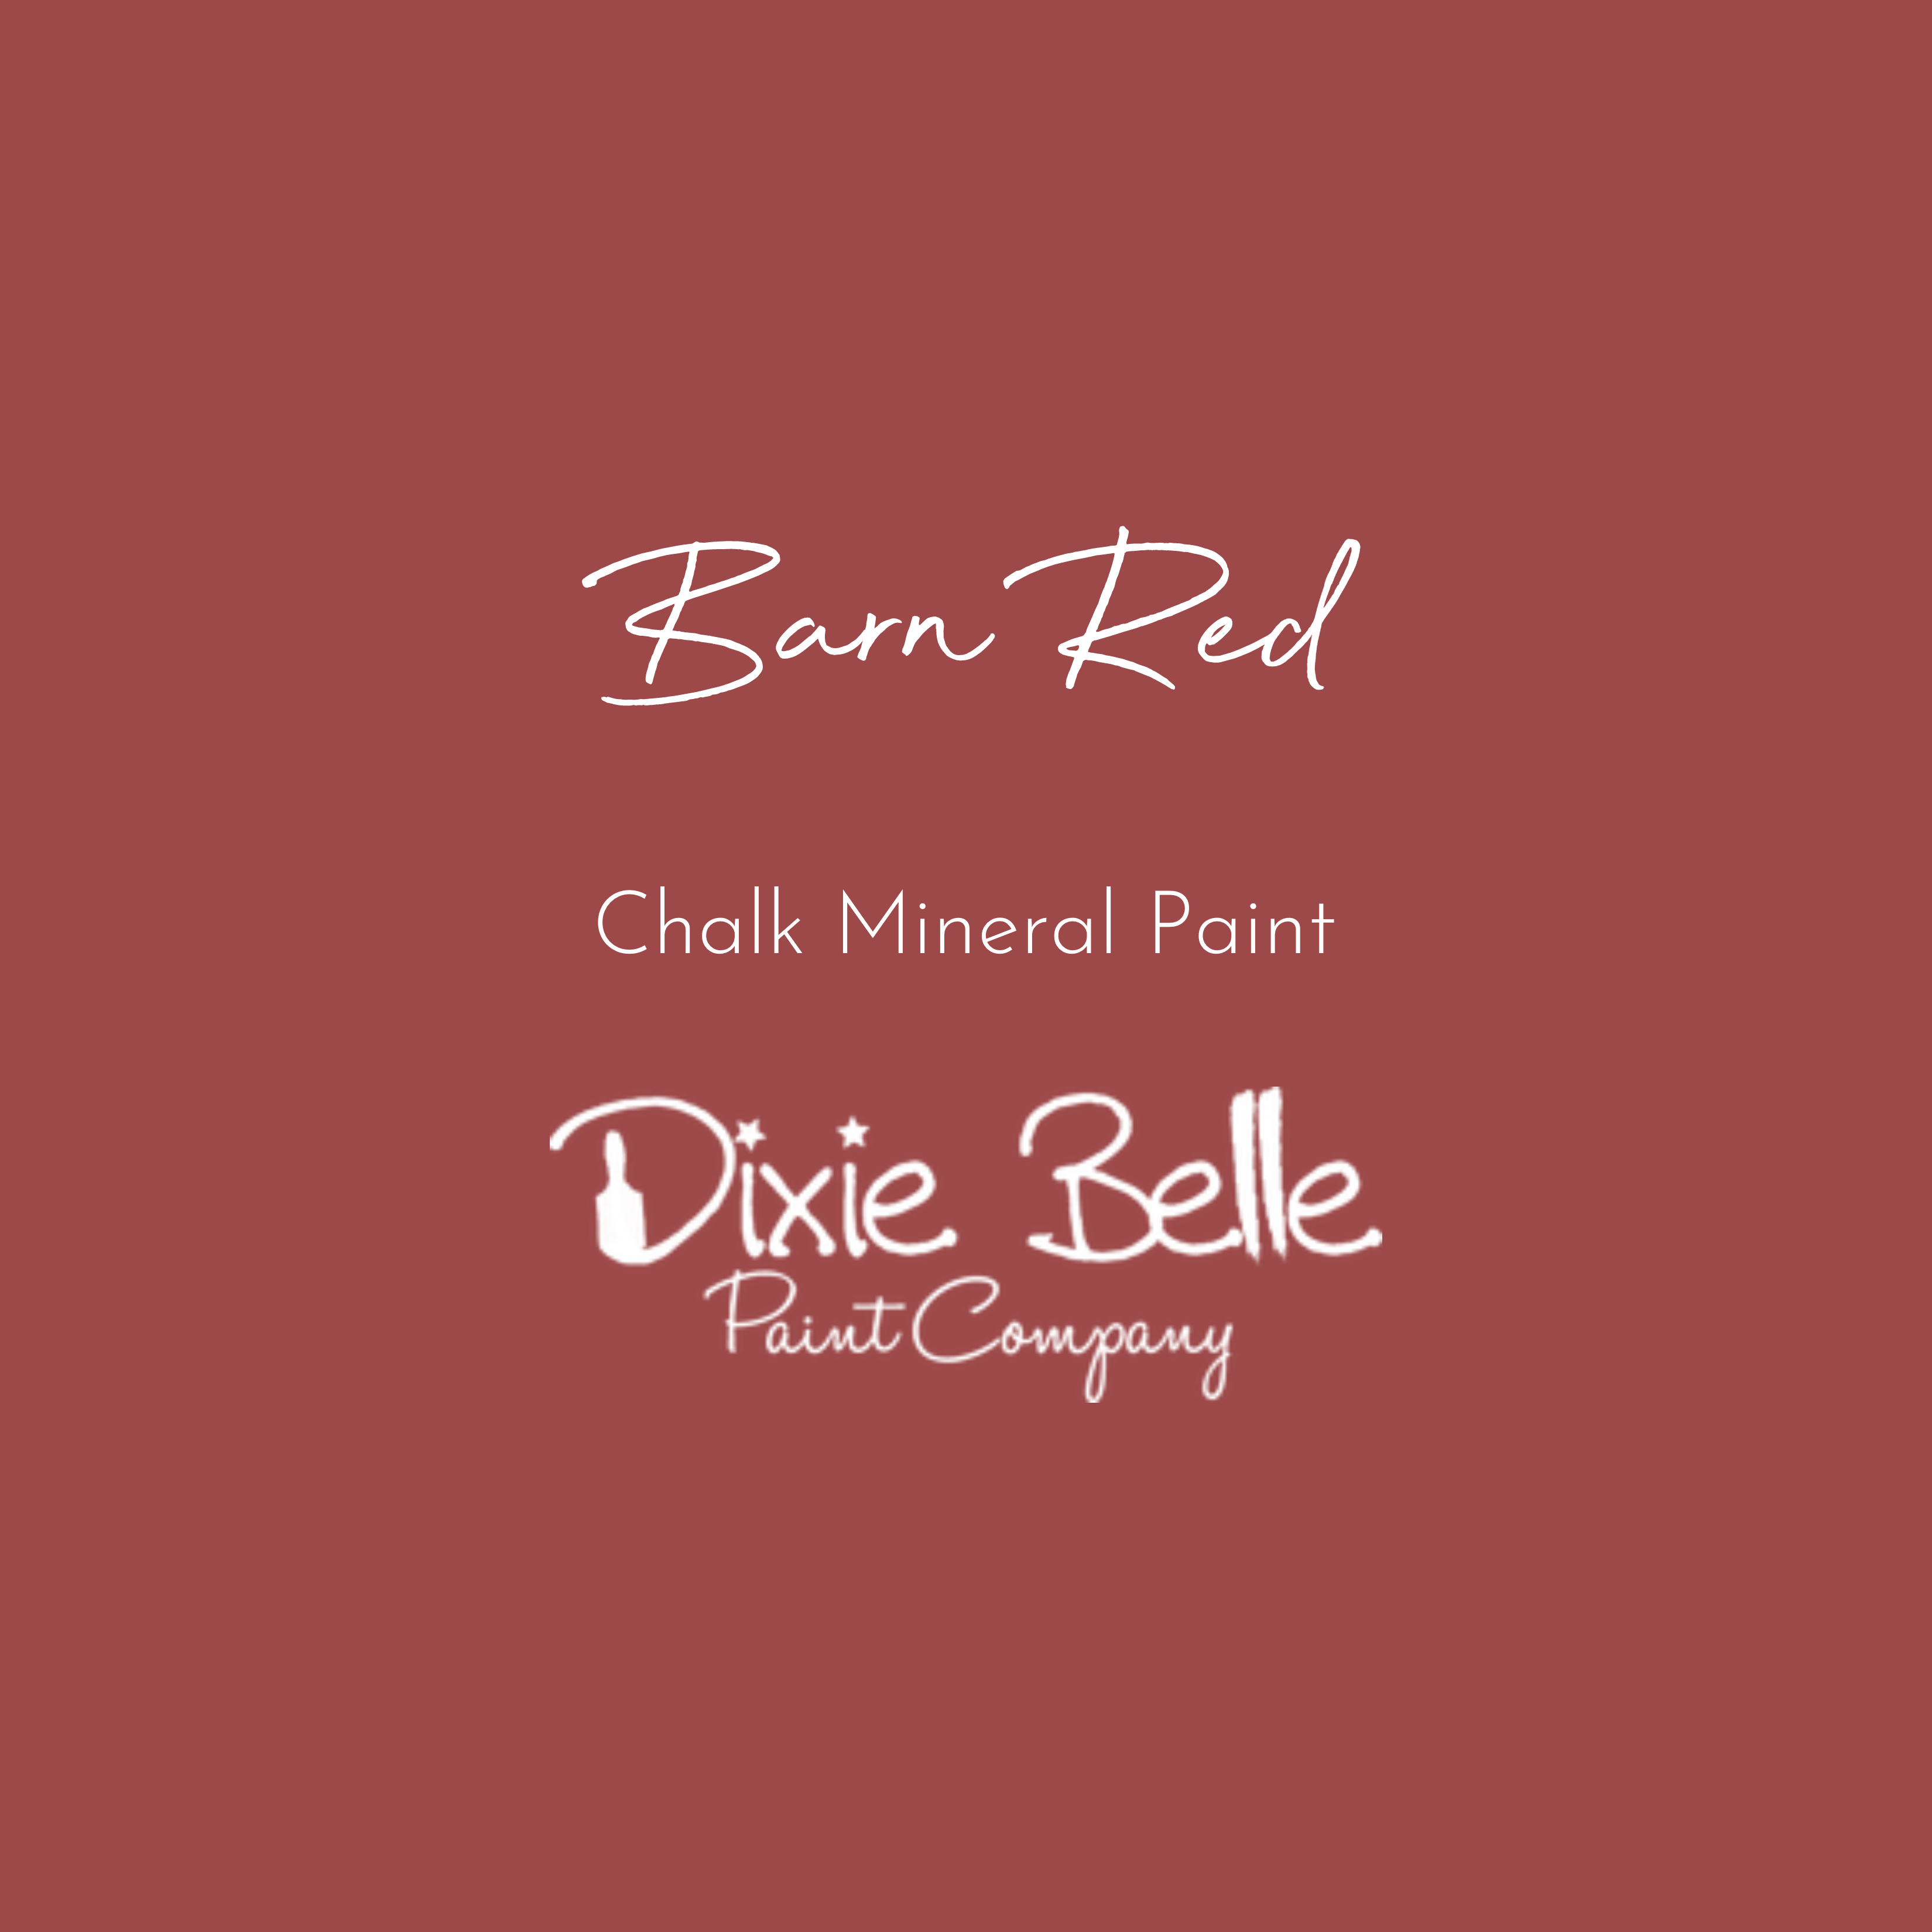 Bunker Hill Blue Chalk Mineral Paint - Dixie Belle Paint Company